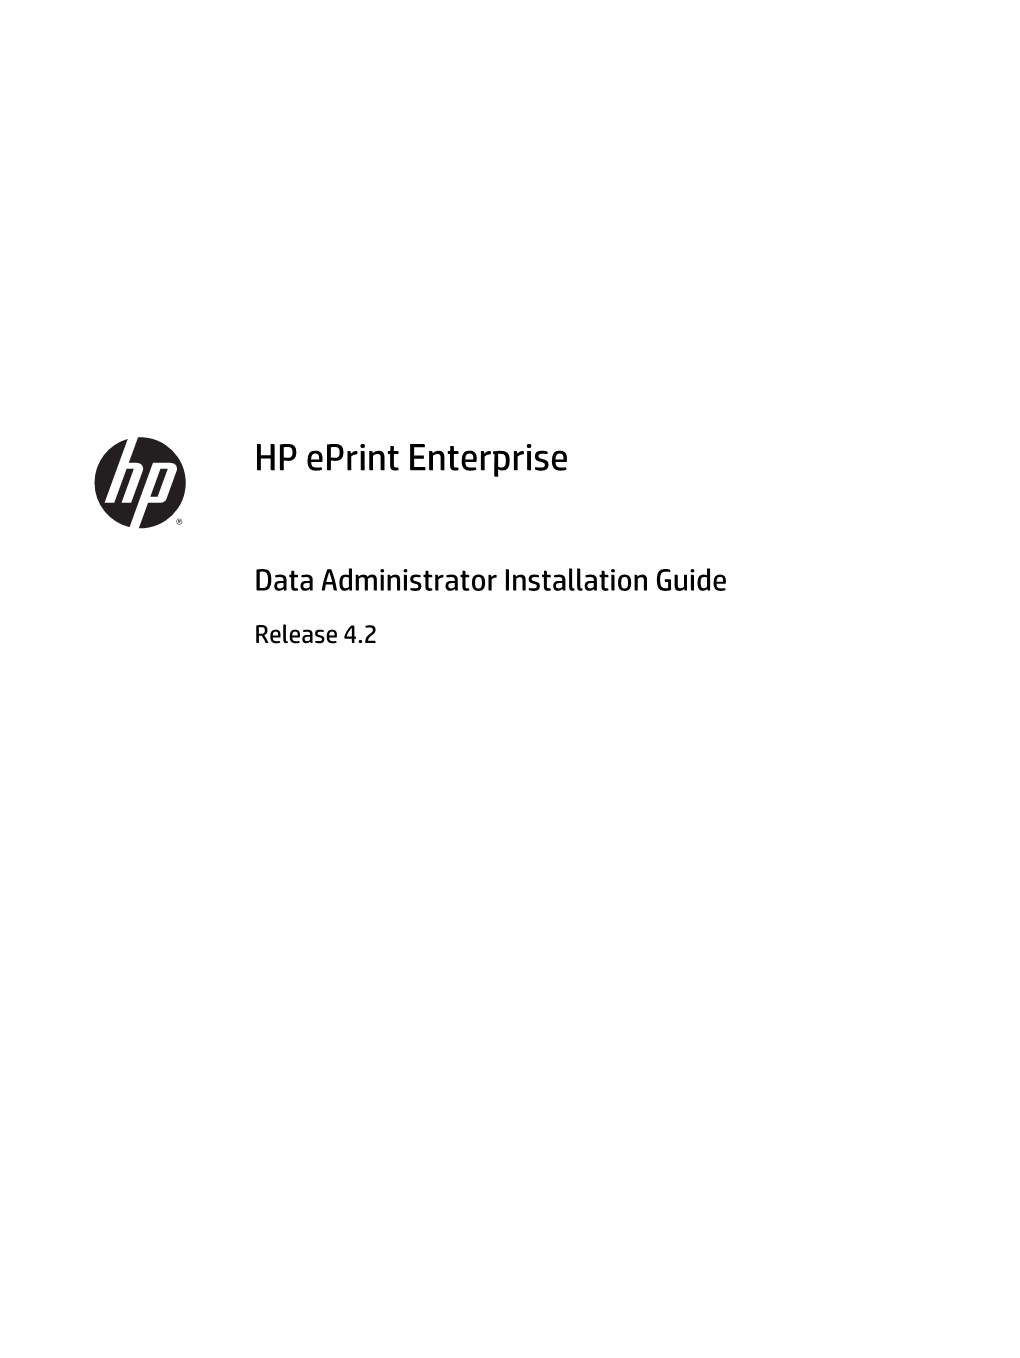 HP Eprint Enterprise Data Administrator Installation Guide